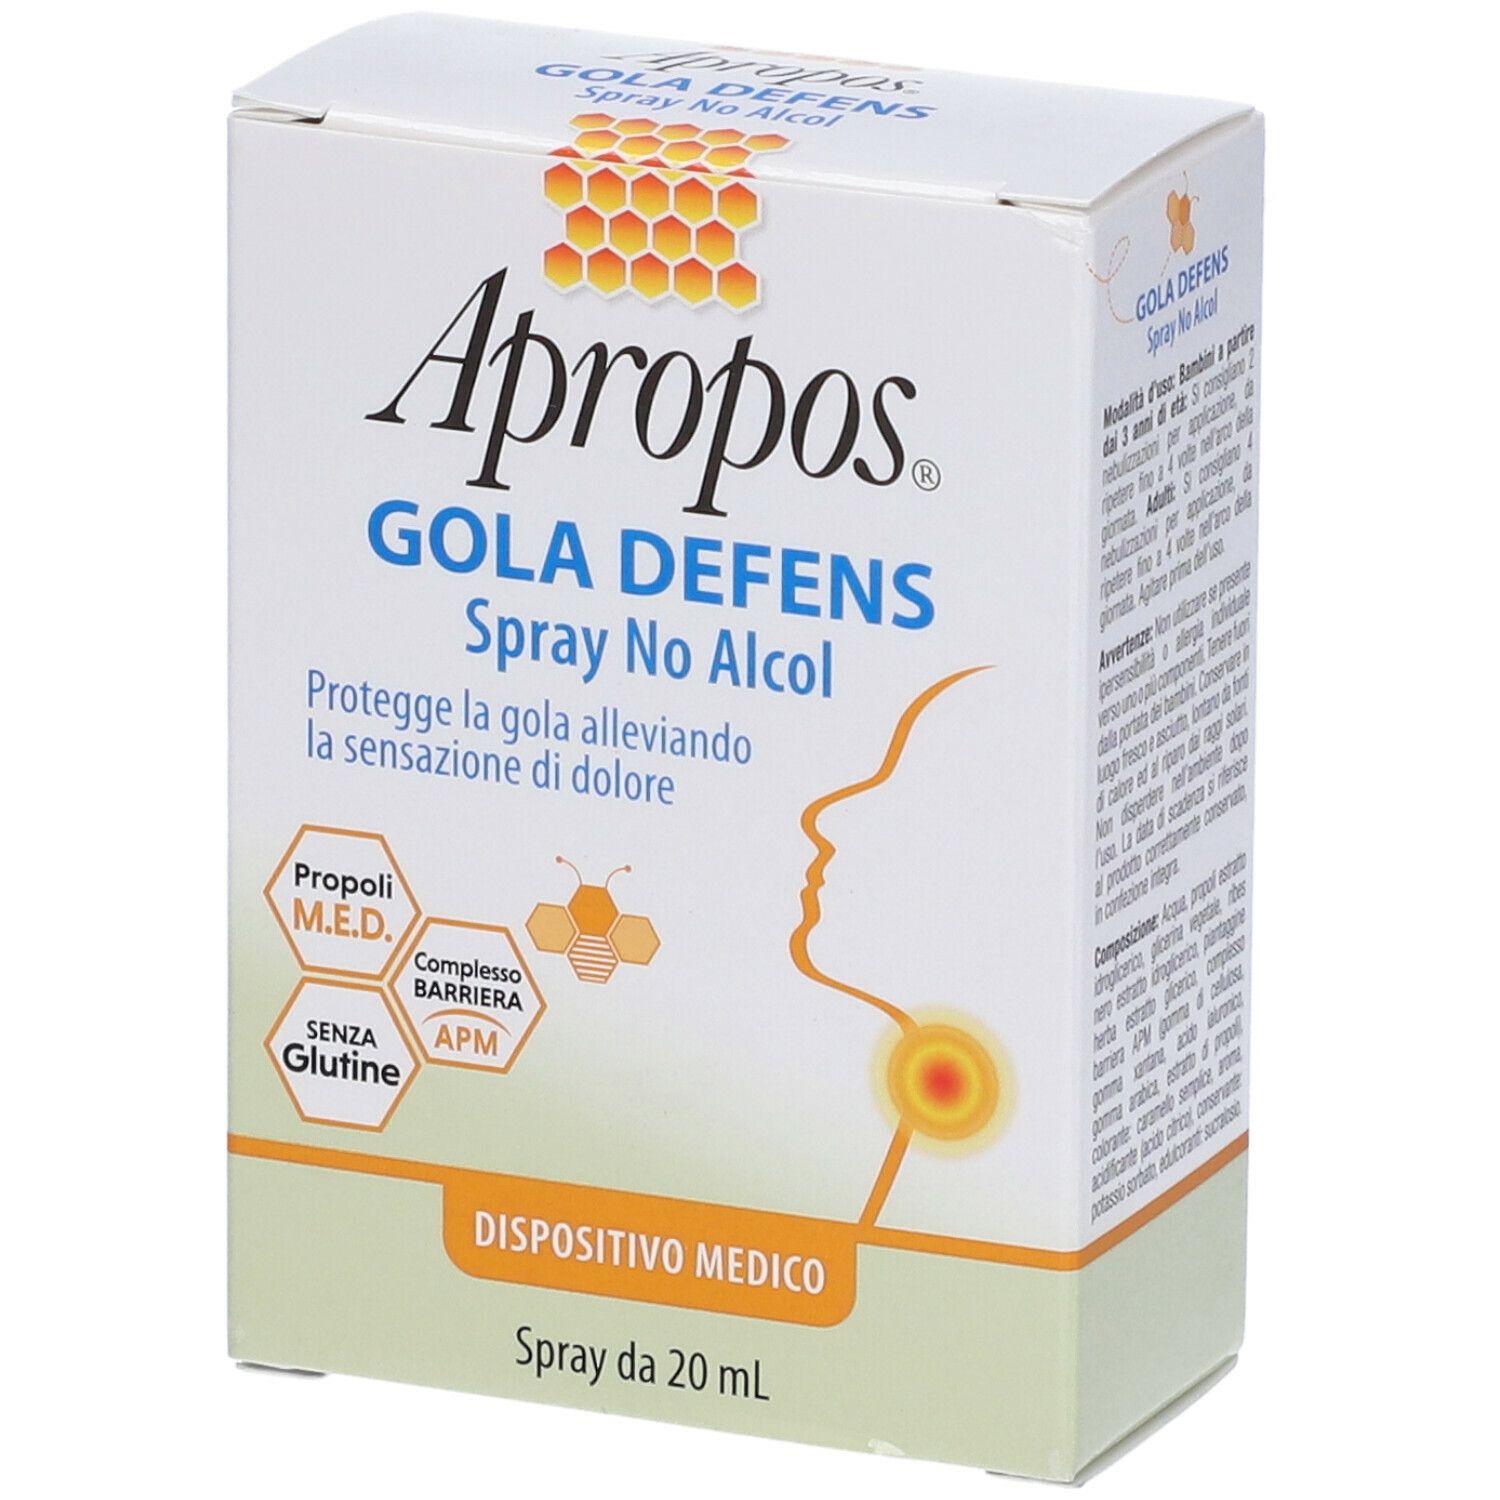 Apropos® Gola Defens Spray No Alcol